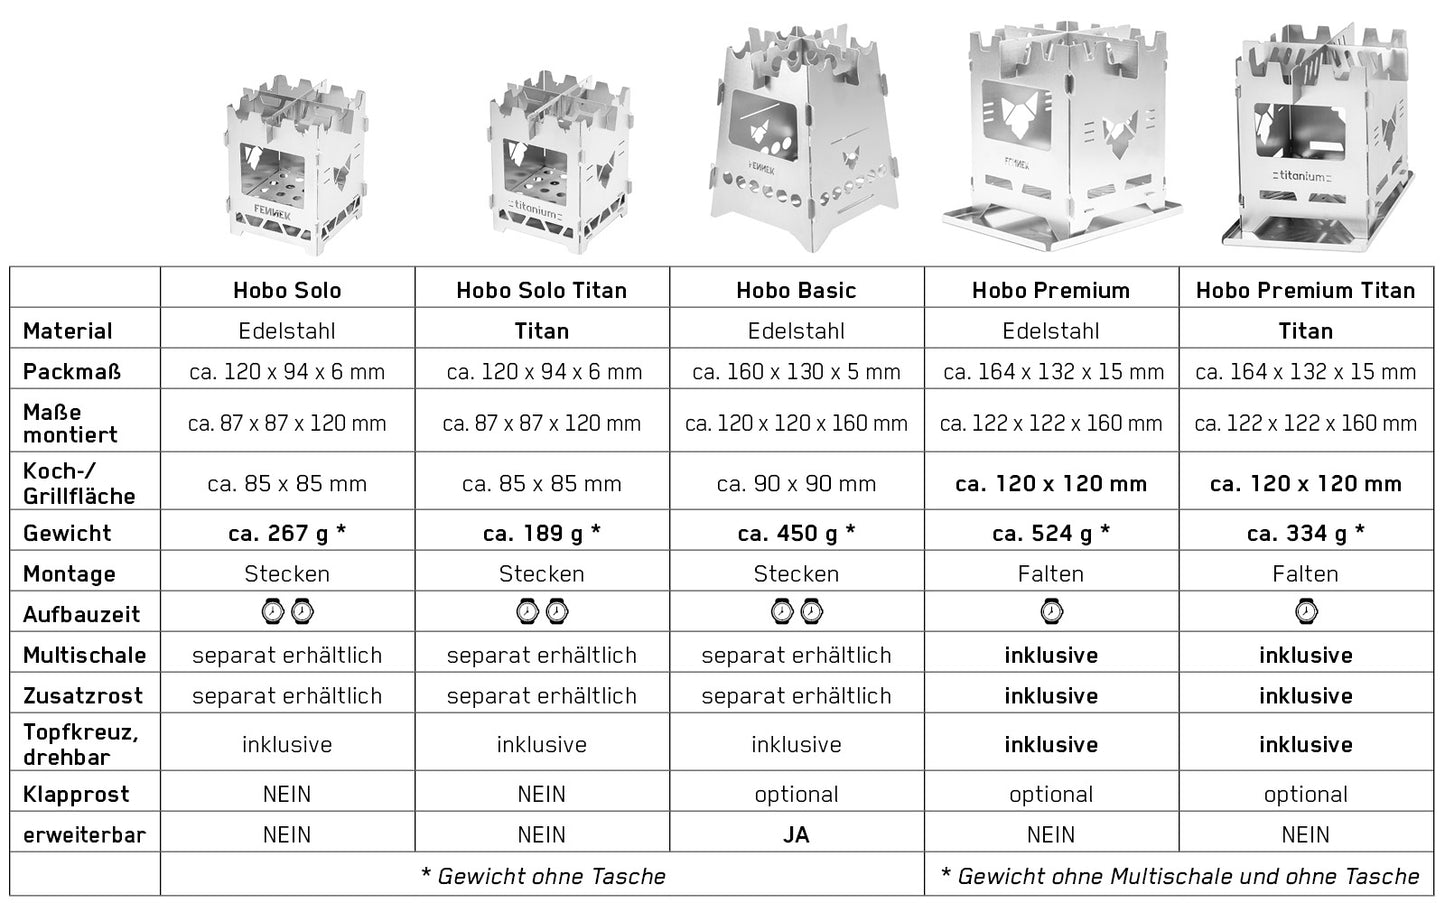 Tabelle mit Übersicht der verschiedenen Hobokocher mit Details und Unterschieden.